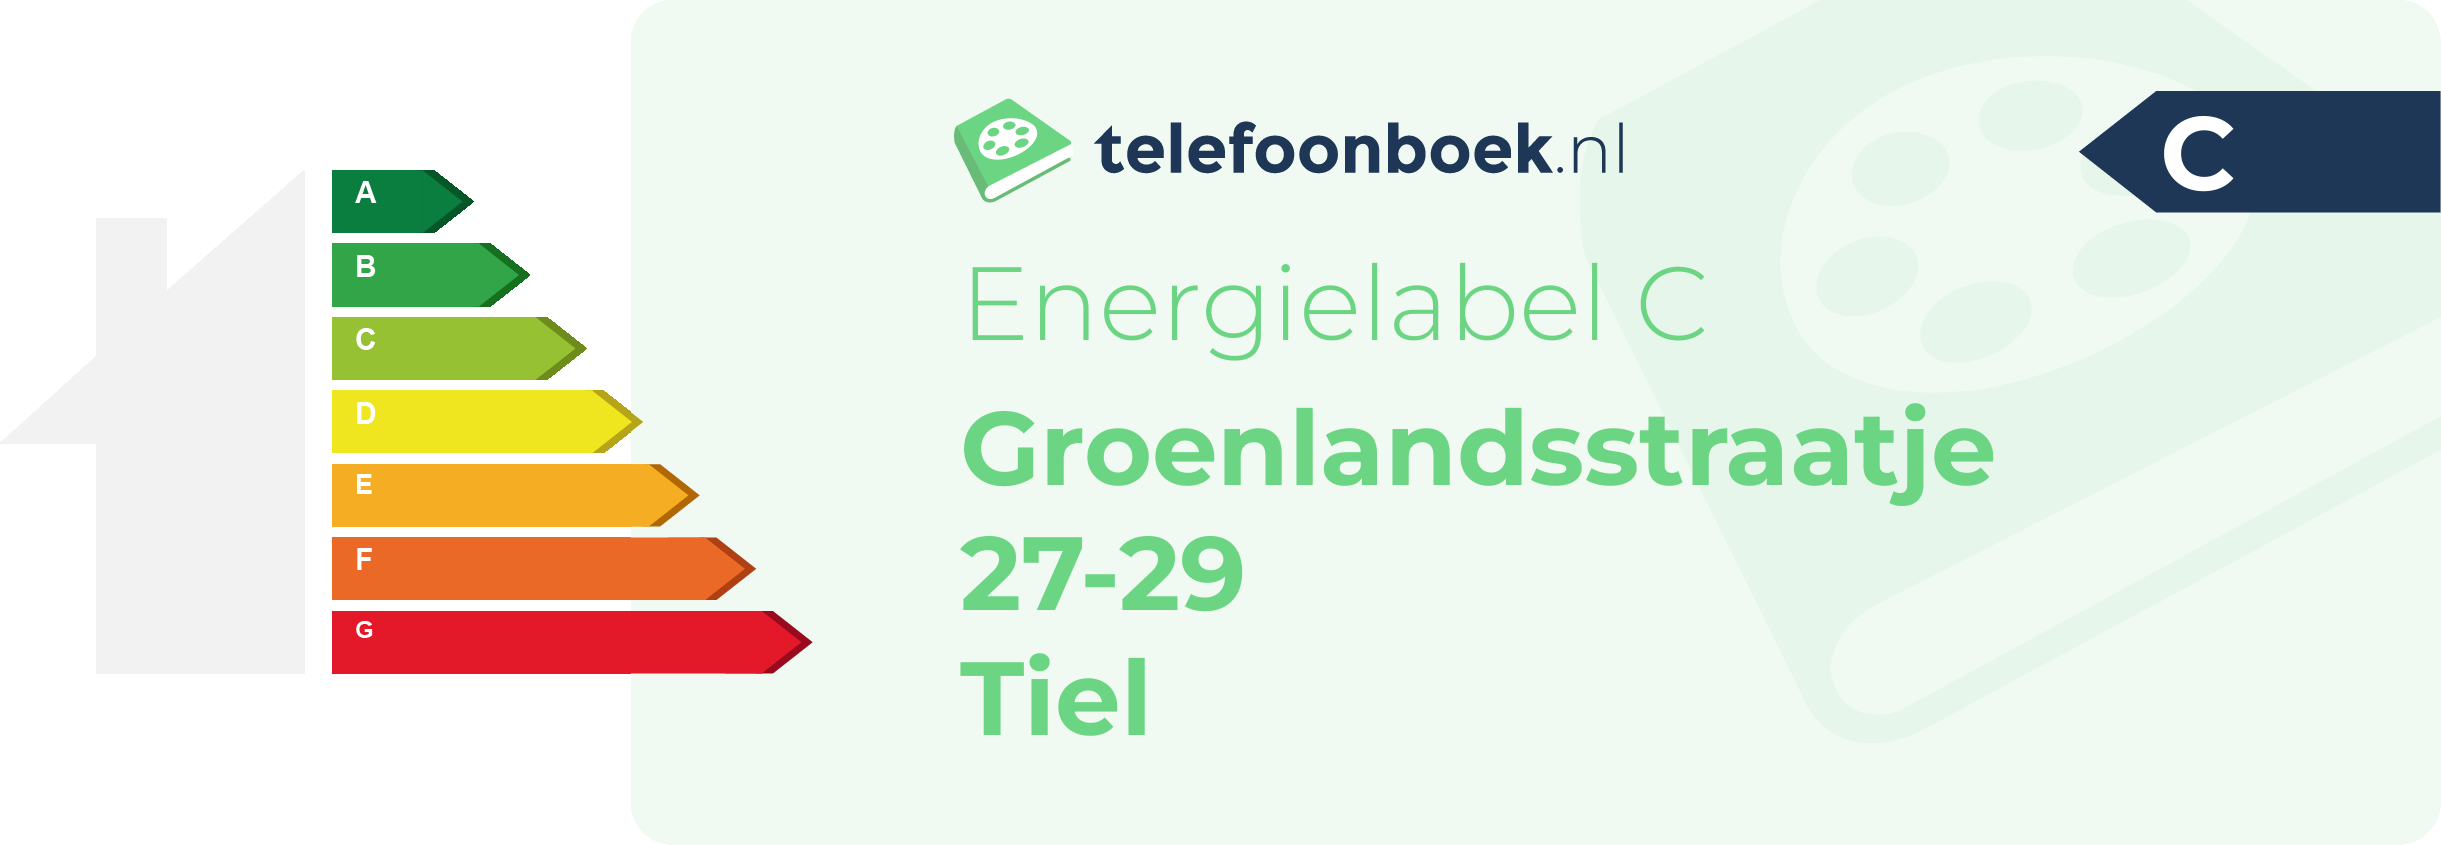 Energielabel Groenlandsstraatje 27-29 Tiel